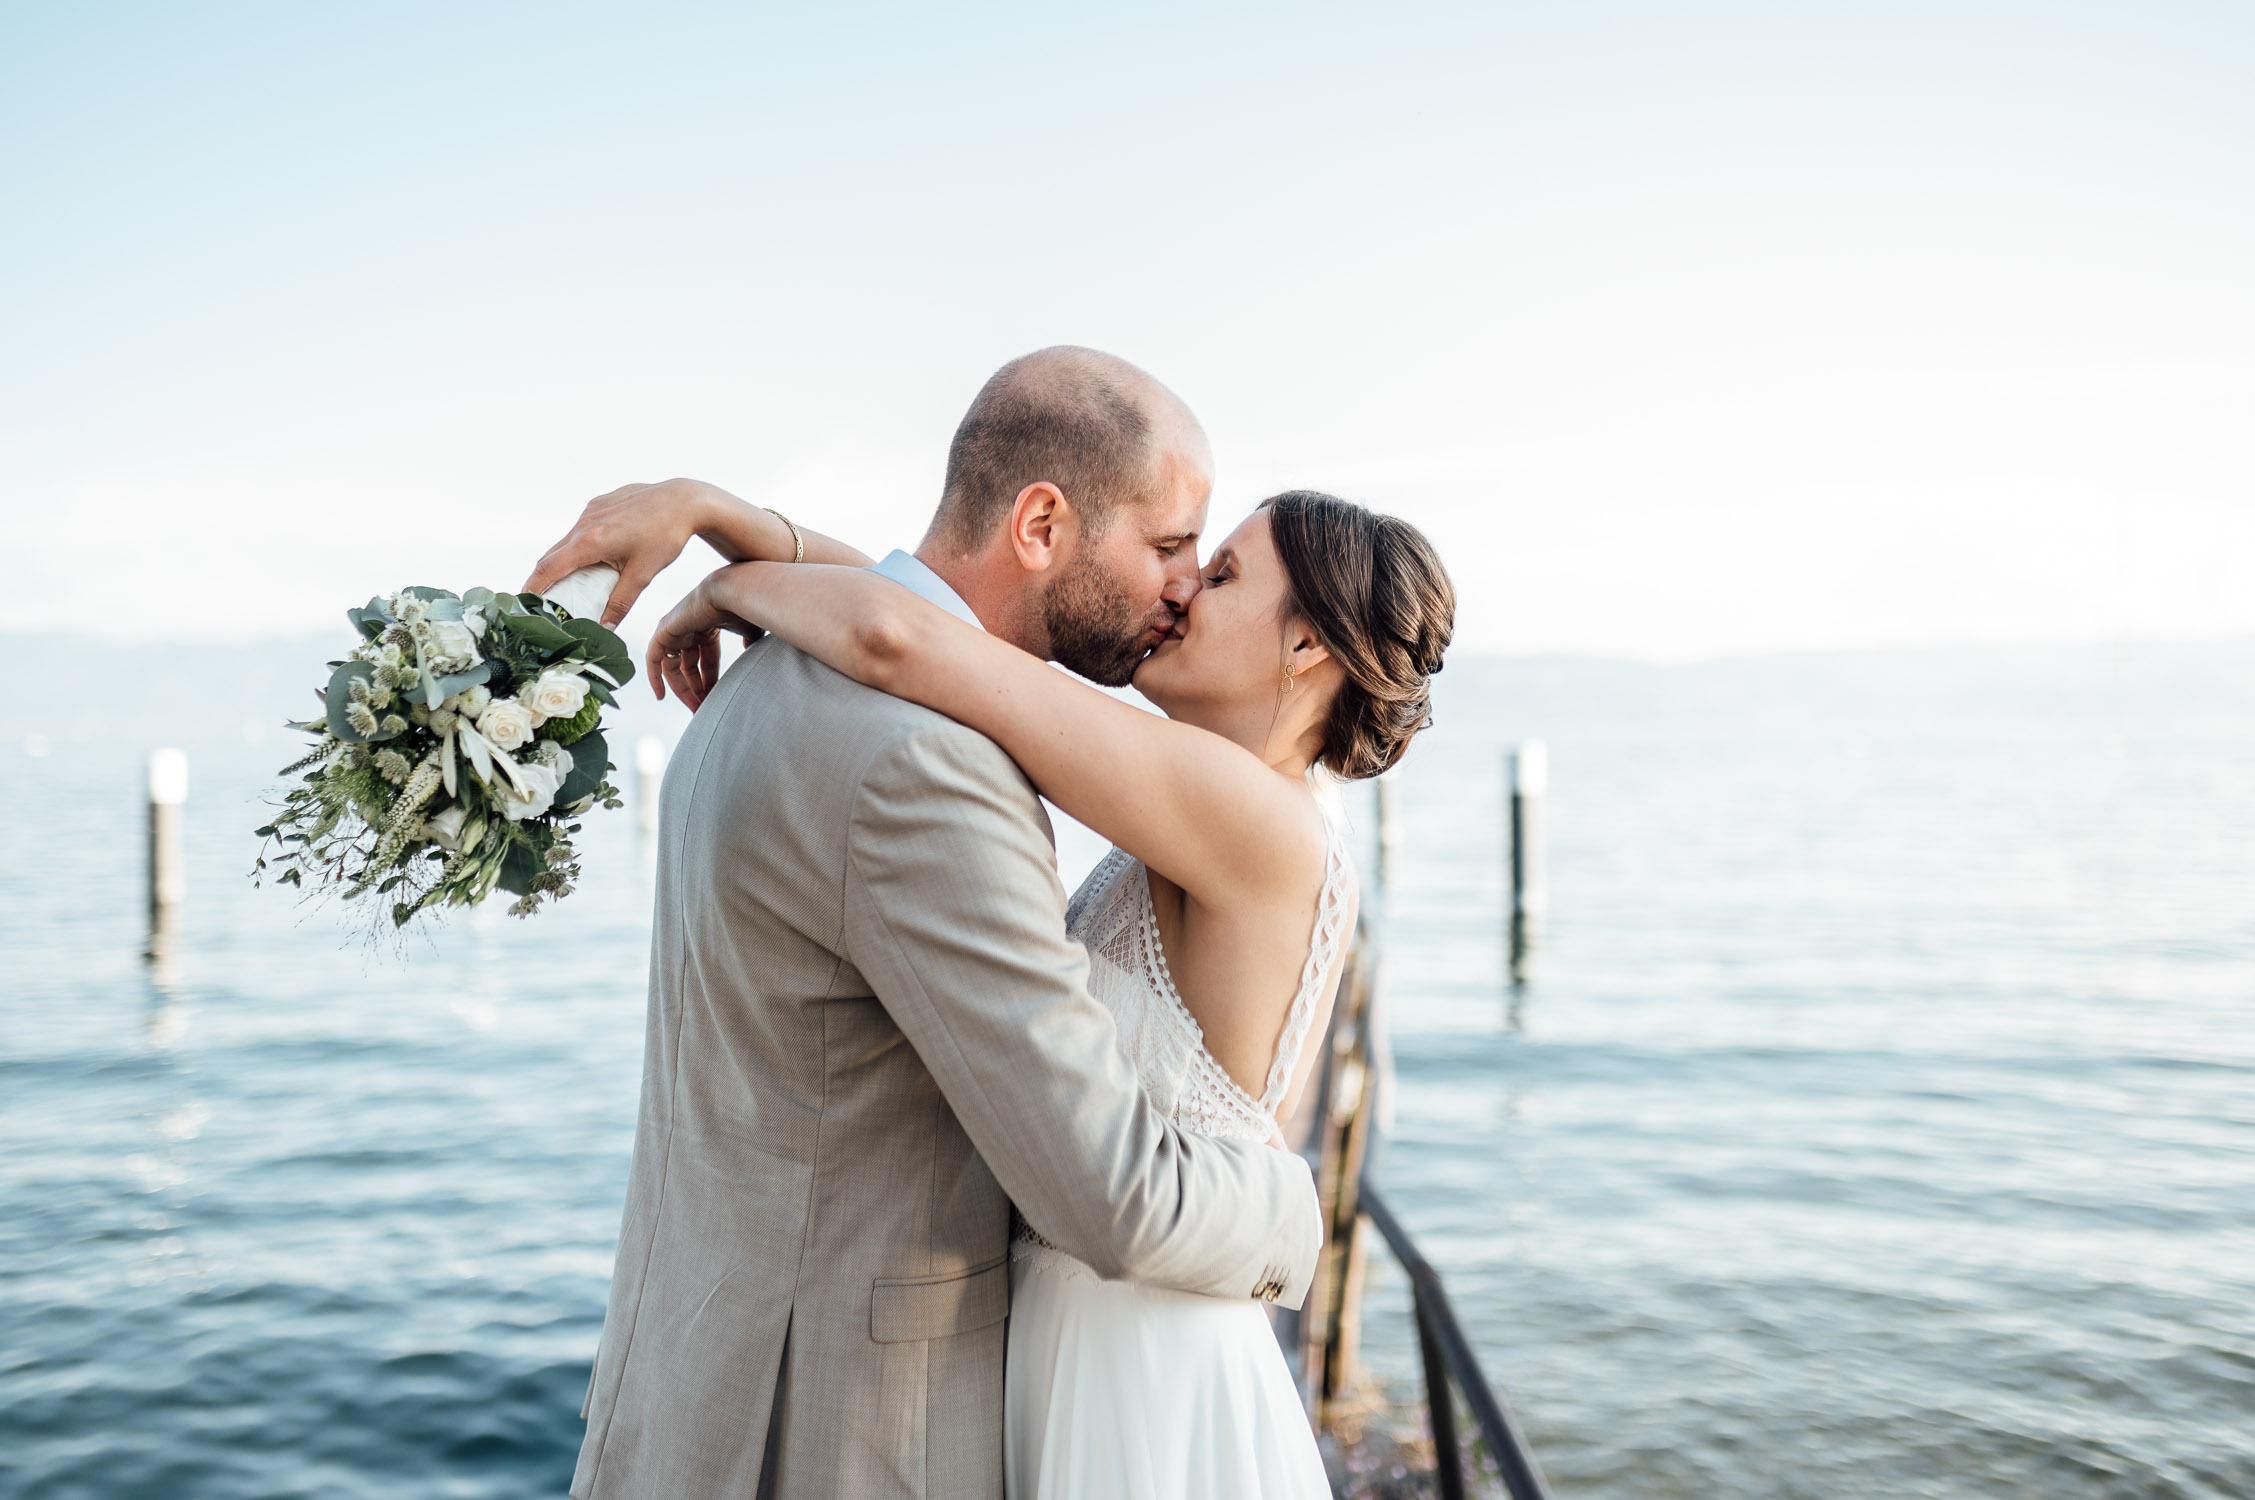 Hochzeitsfotograf Bodensee | Natürliche Hochzeitsbilder am Bodensee